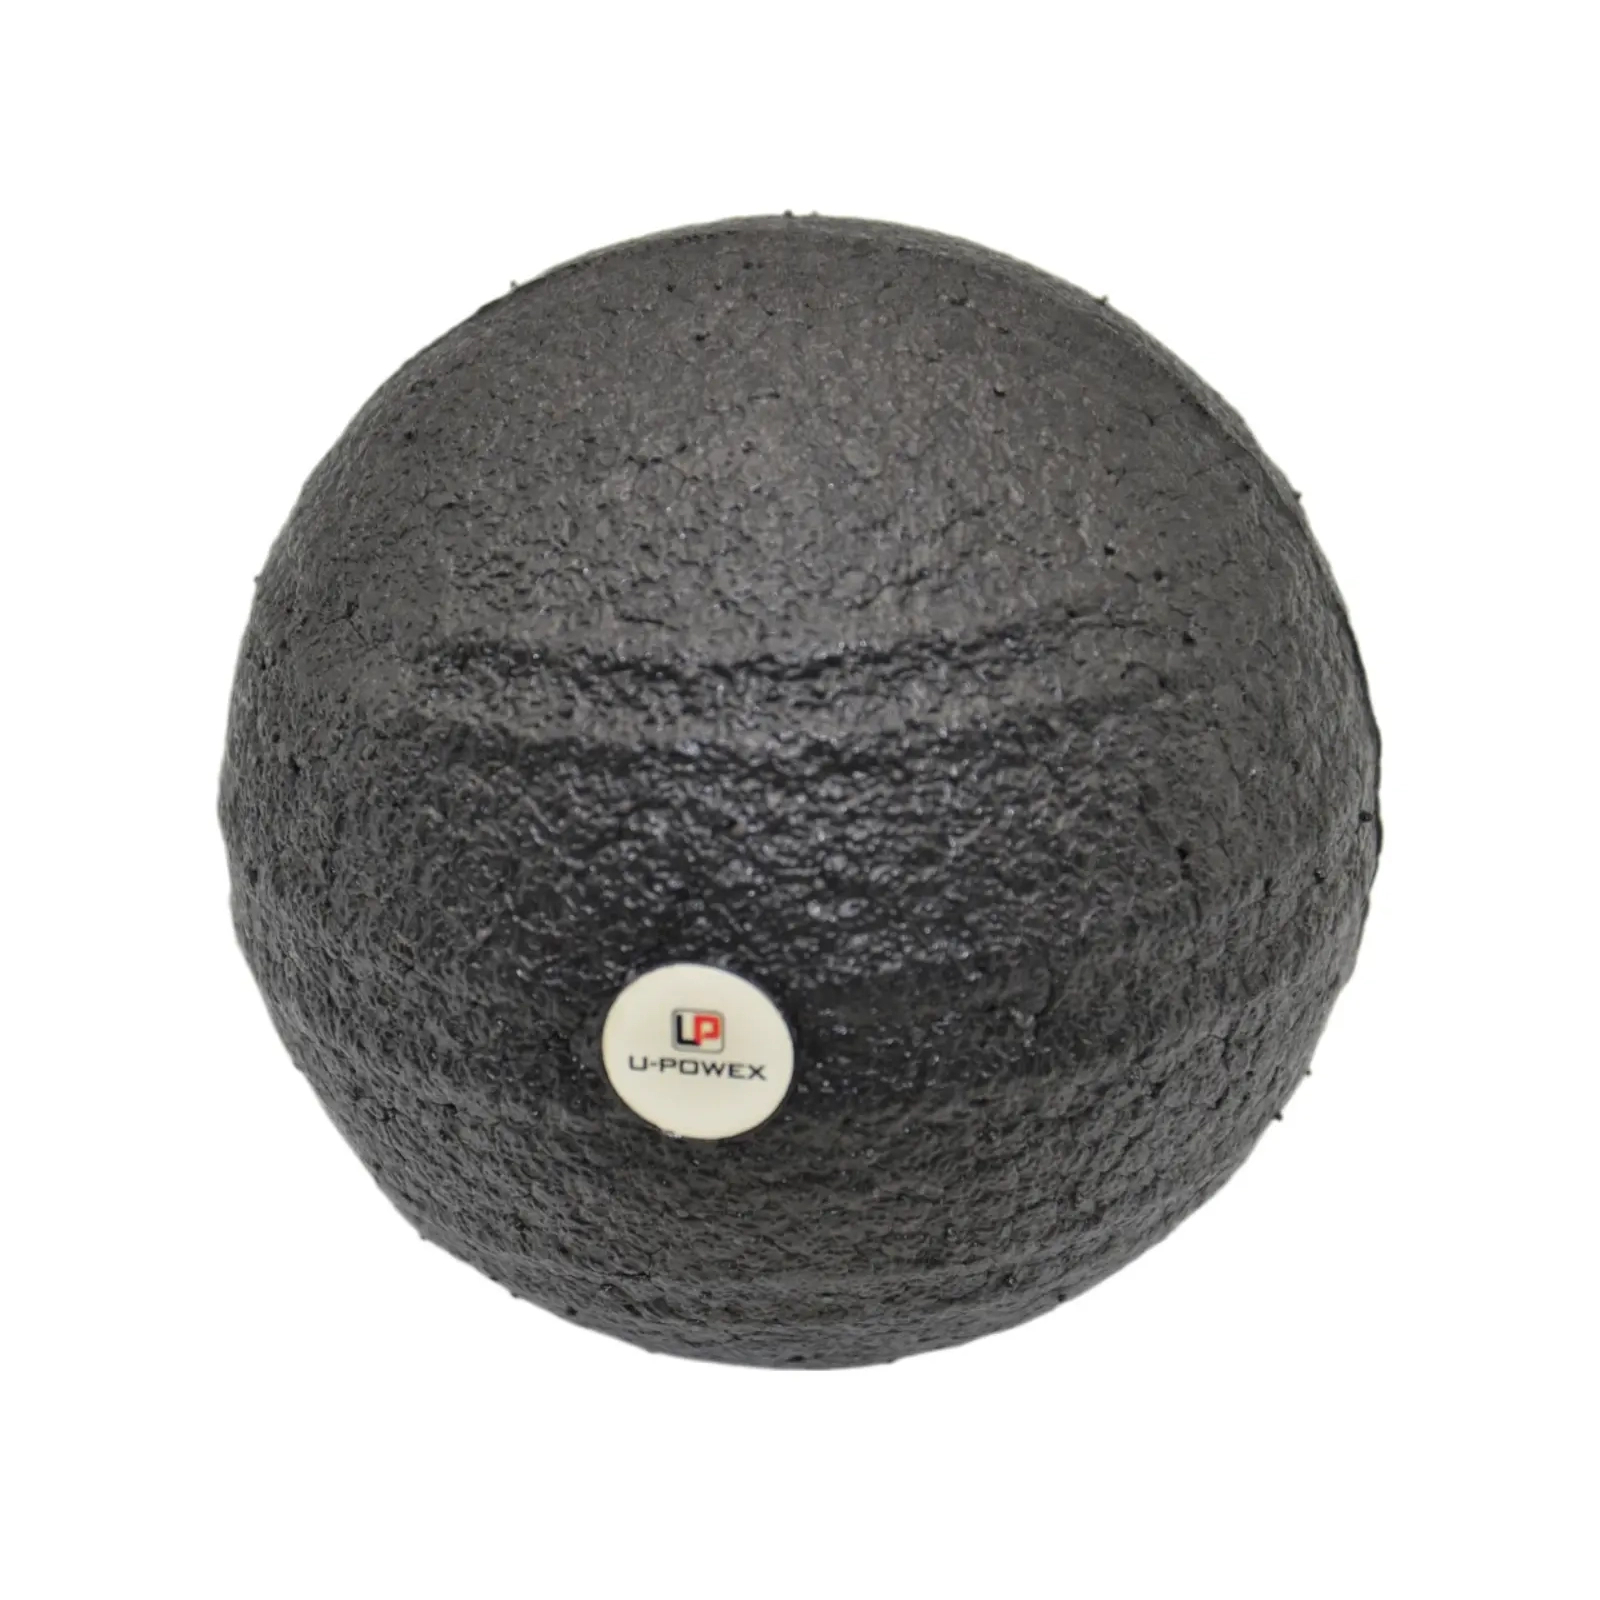 Массажный мяч U-Powex Epp foam ball d8cm Black (UP_1003_Ball_D8cm) изображение 3